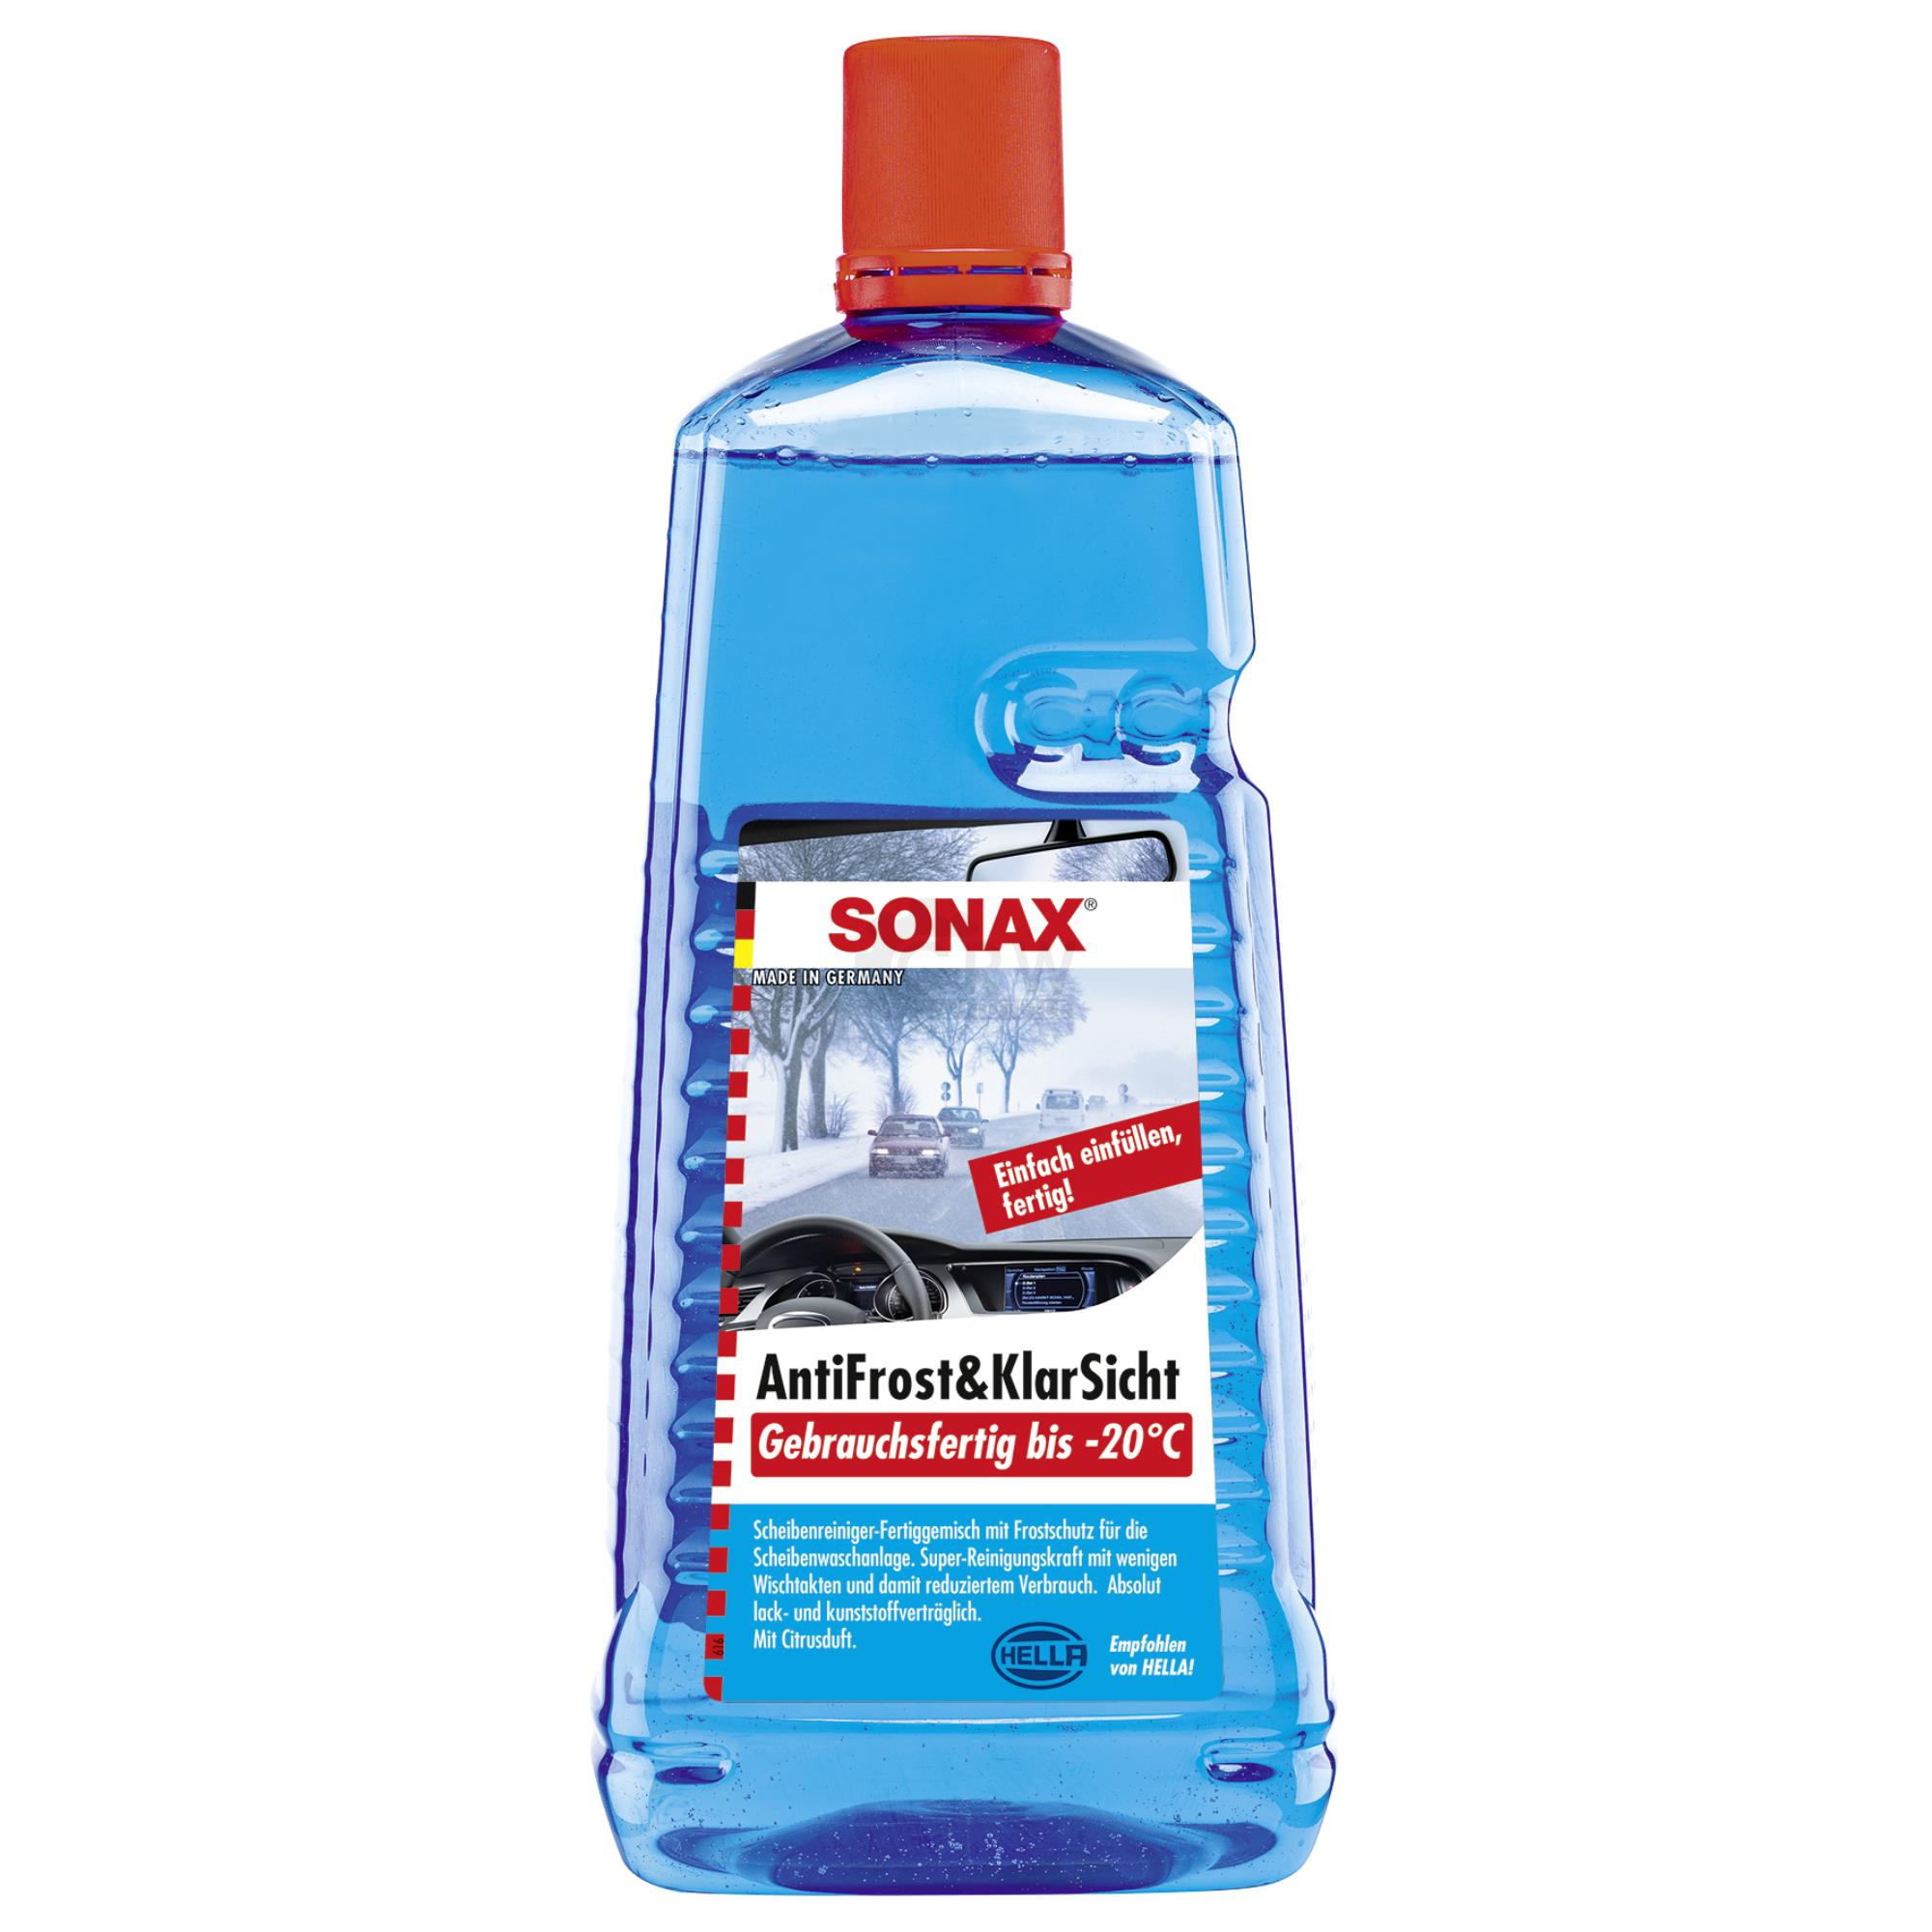 SONAX AntiFrost&KlarSicht gebrauchsfertig bis -20°C Frostschutz 2 Liter